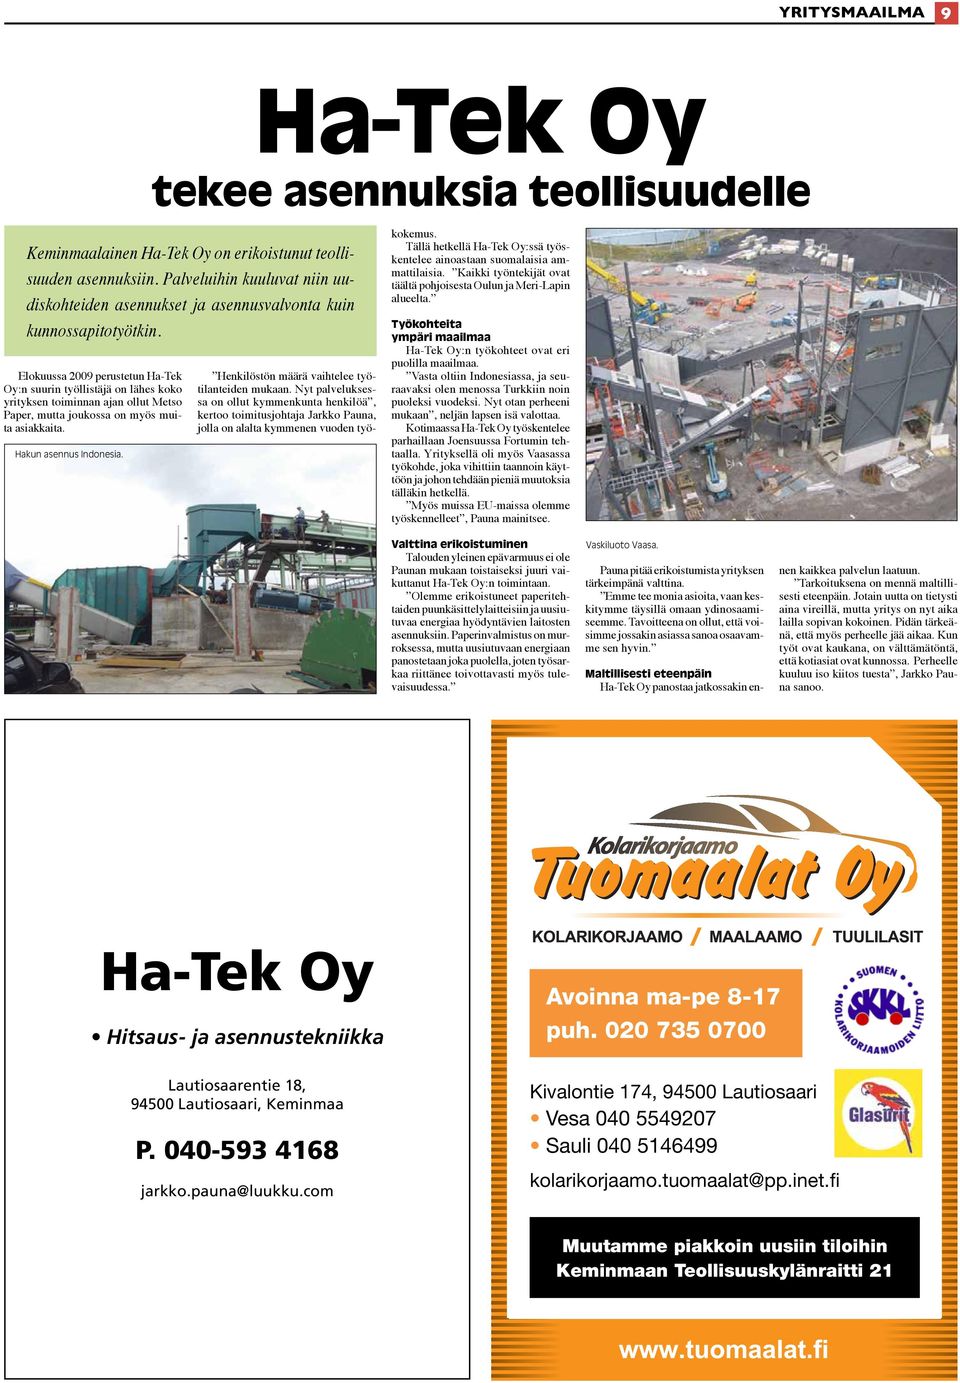 Elokuussa 2009 perustetun Ha-Tek Oy:n suurin työllistäjä on lähes koko yrityksen toiminnan ajan ollut Metso Paper, mutta joukossa on myös muita asiakkaita. Hakun asennus Indonesia.